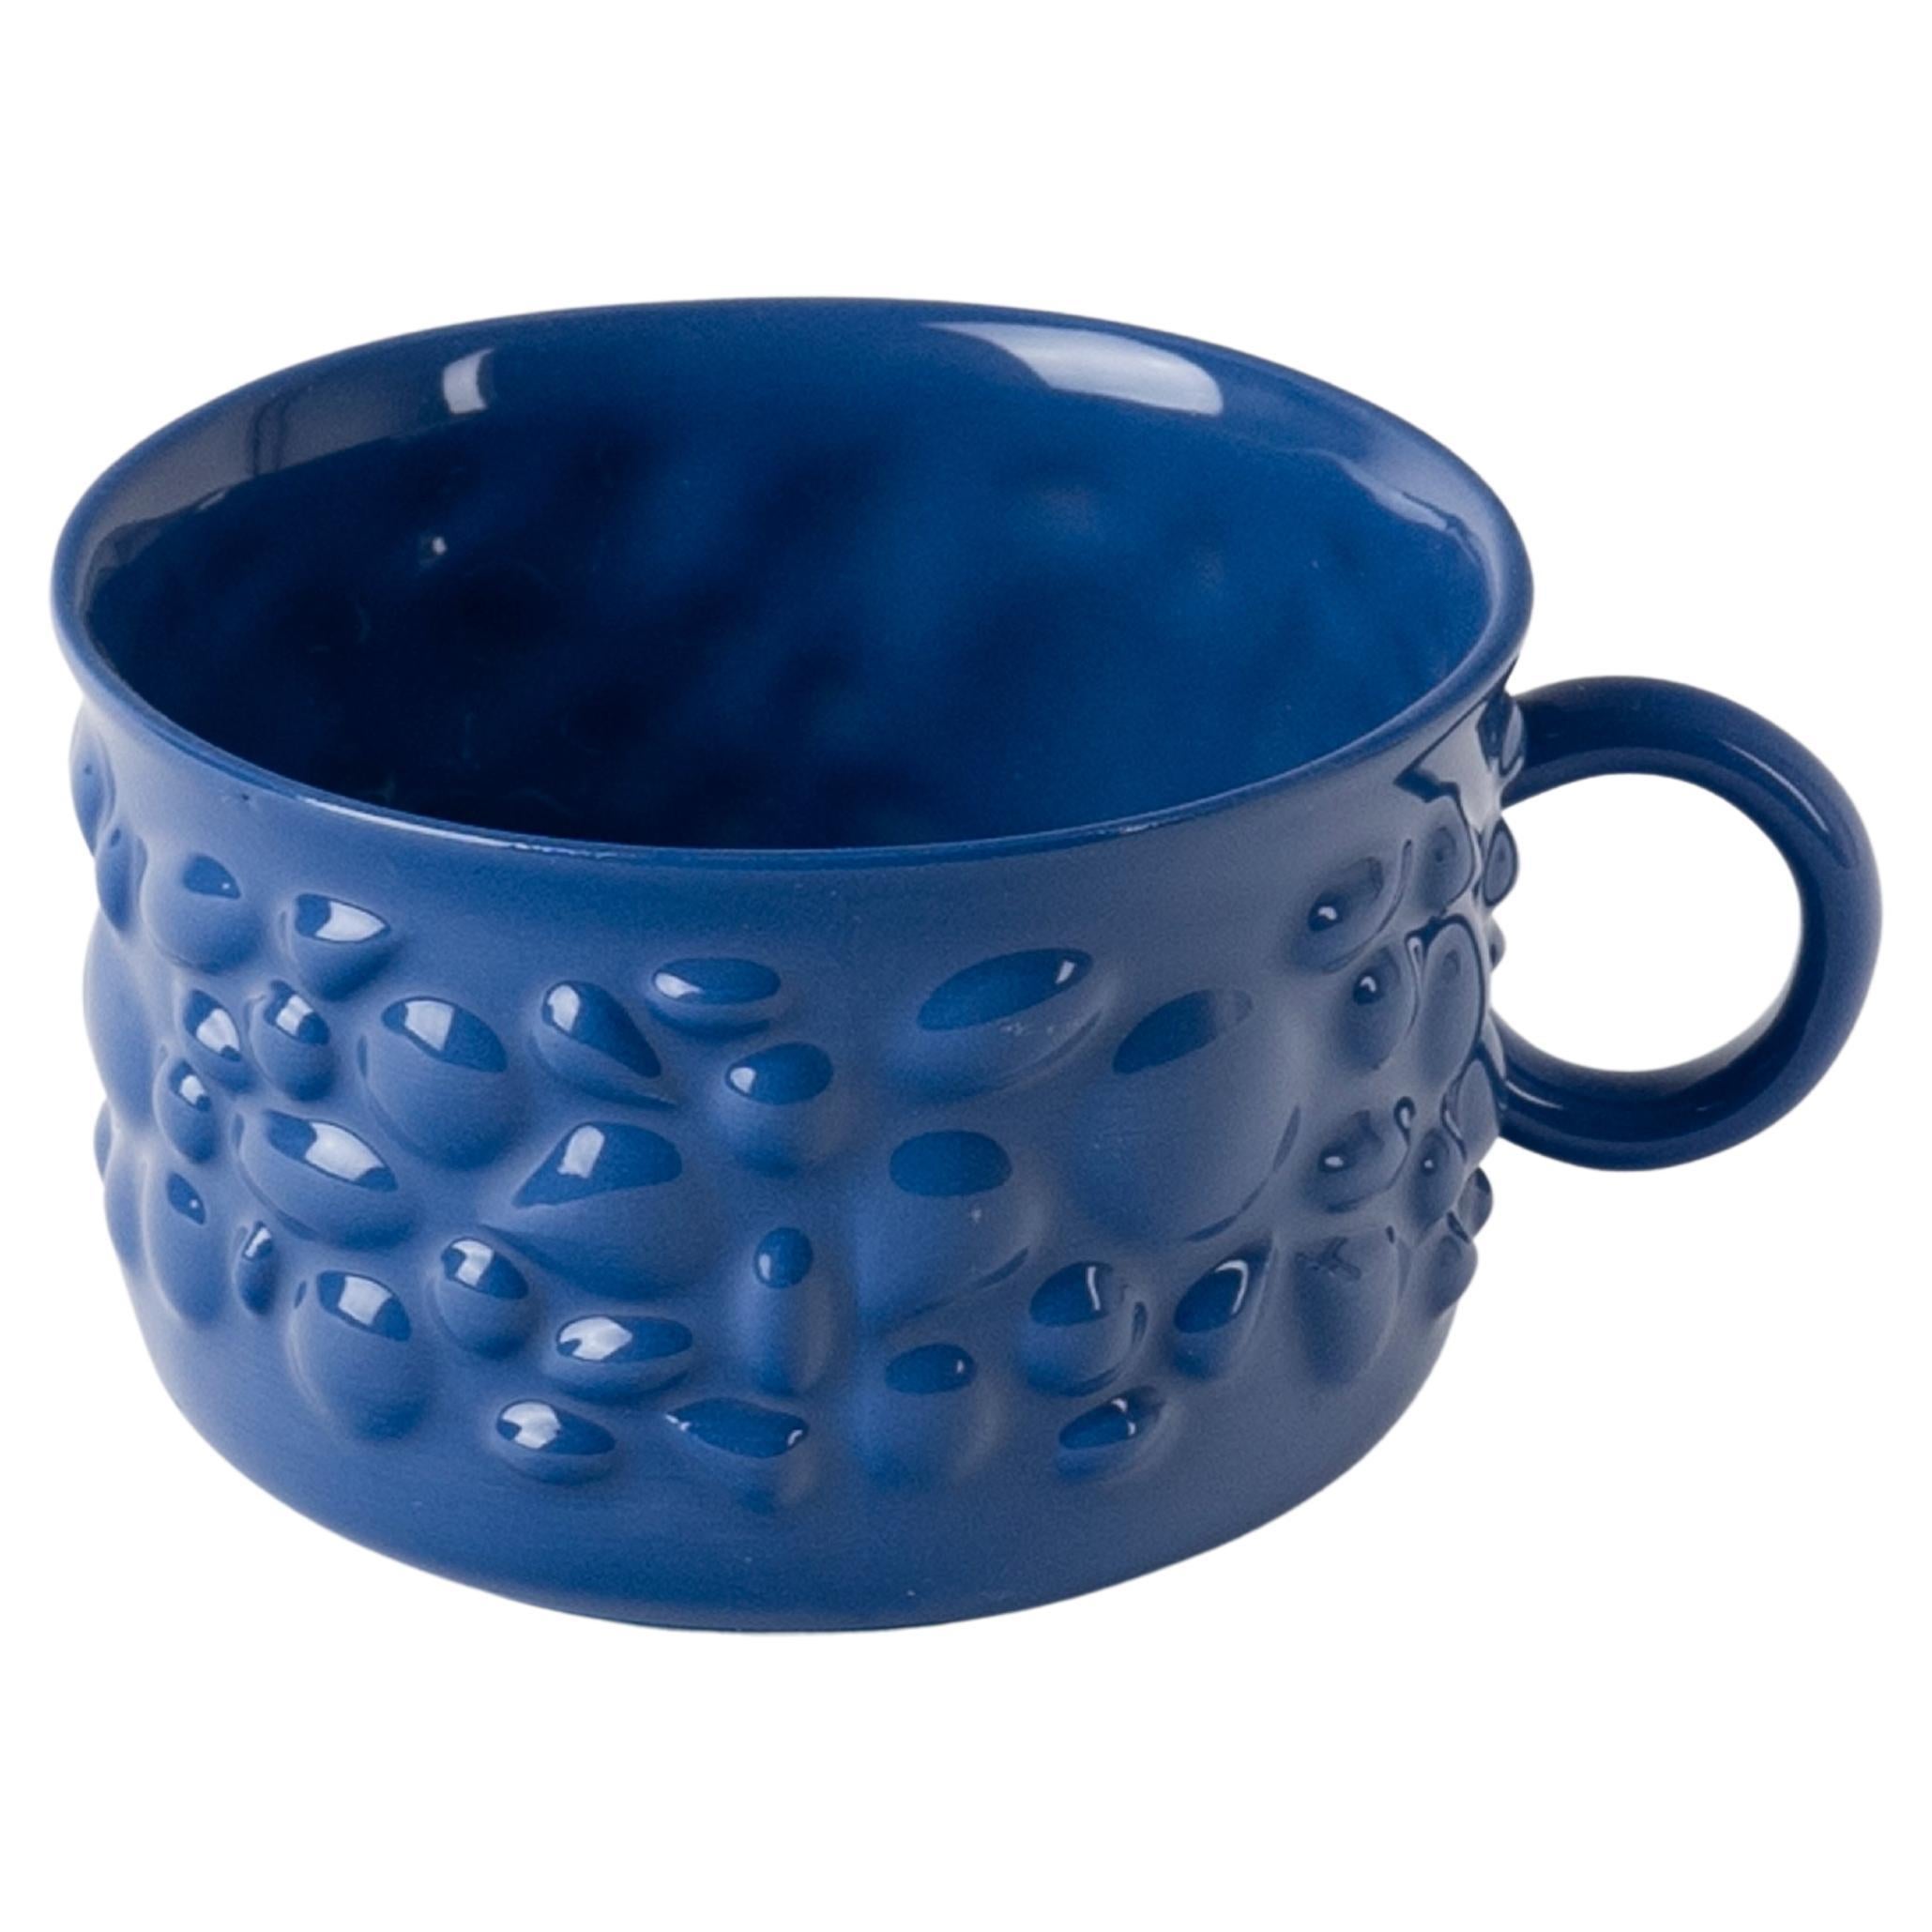 Tasse à café contemporaine moderne en porcelaine Justine avec poignée, bleu marine